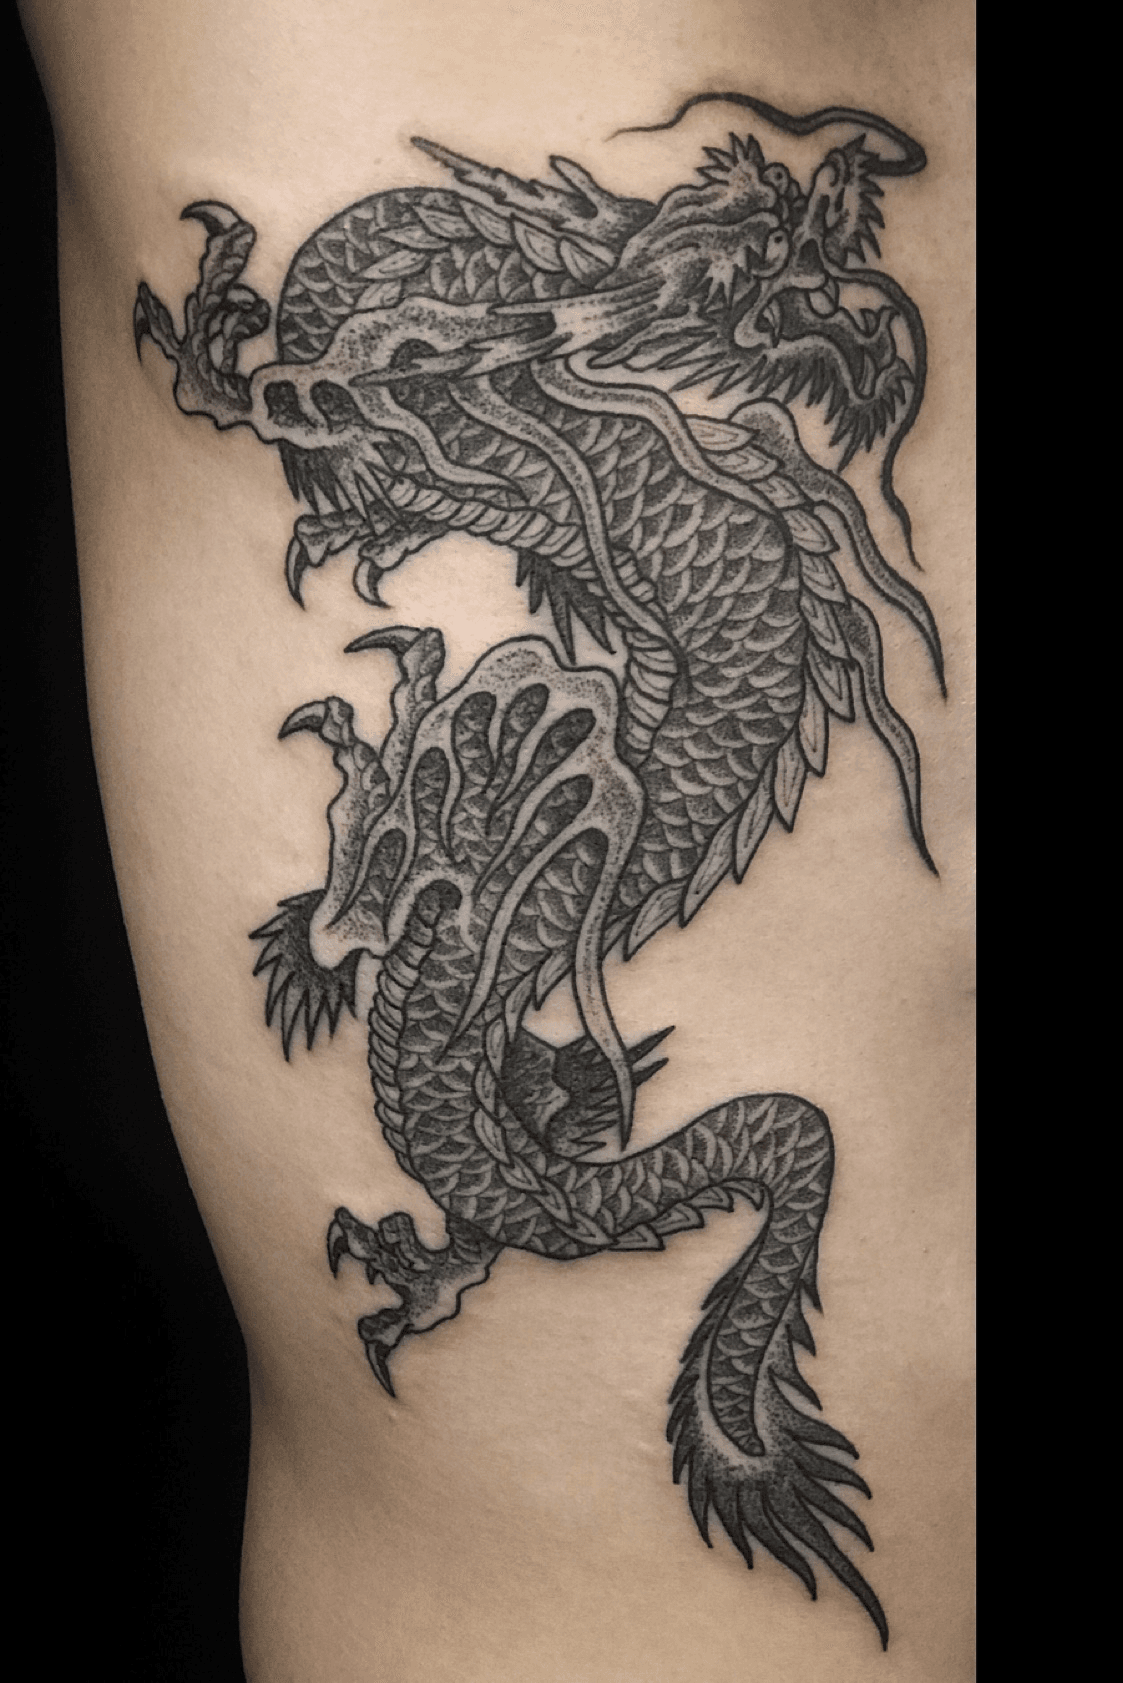 dragon tattoo for girls 23012020 033 dragon tattoo tattoovaluenet   tattoovaluenet